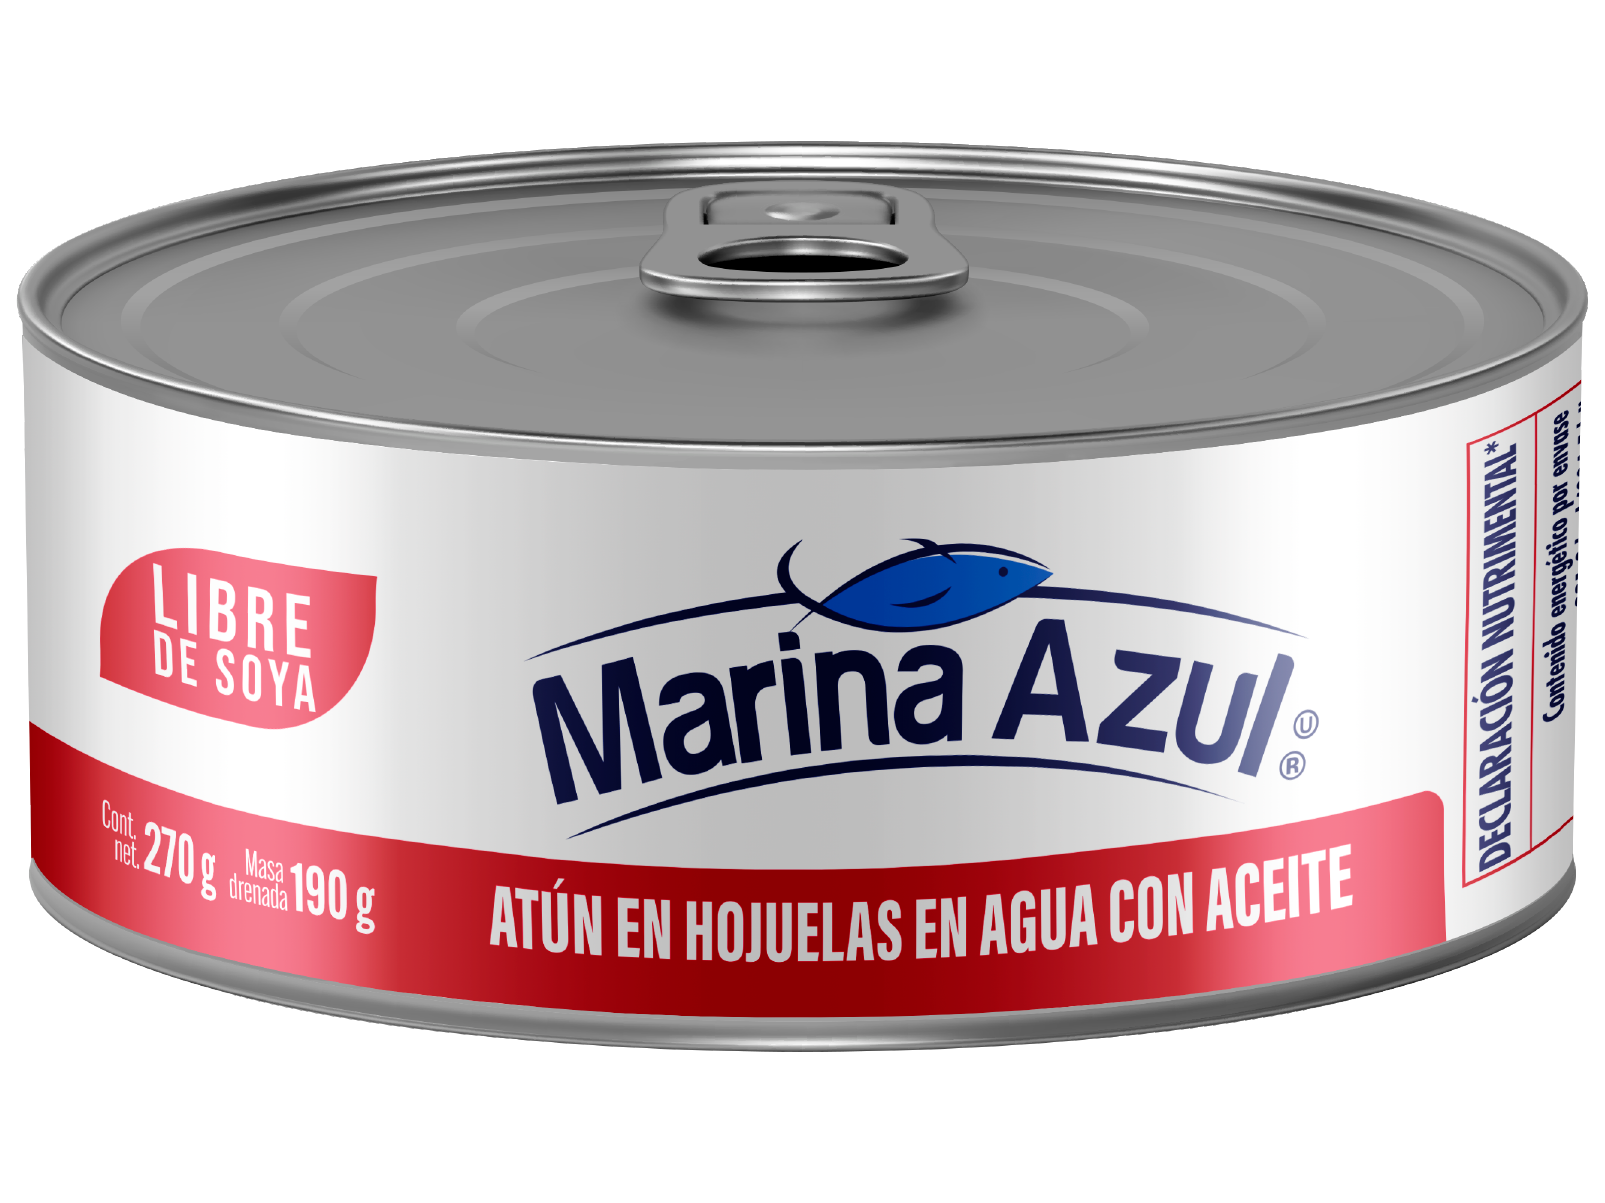 MARINA AZUL LIBRE DE SOYA ATÚN EN HOJUELAS EN AGUA CON ACEITE 270G